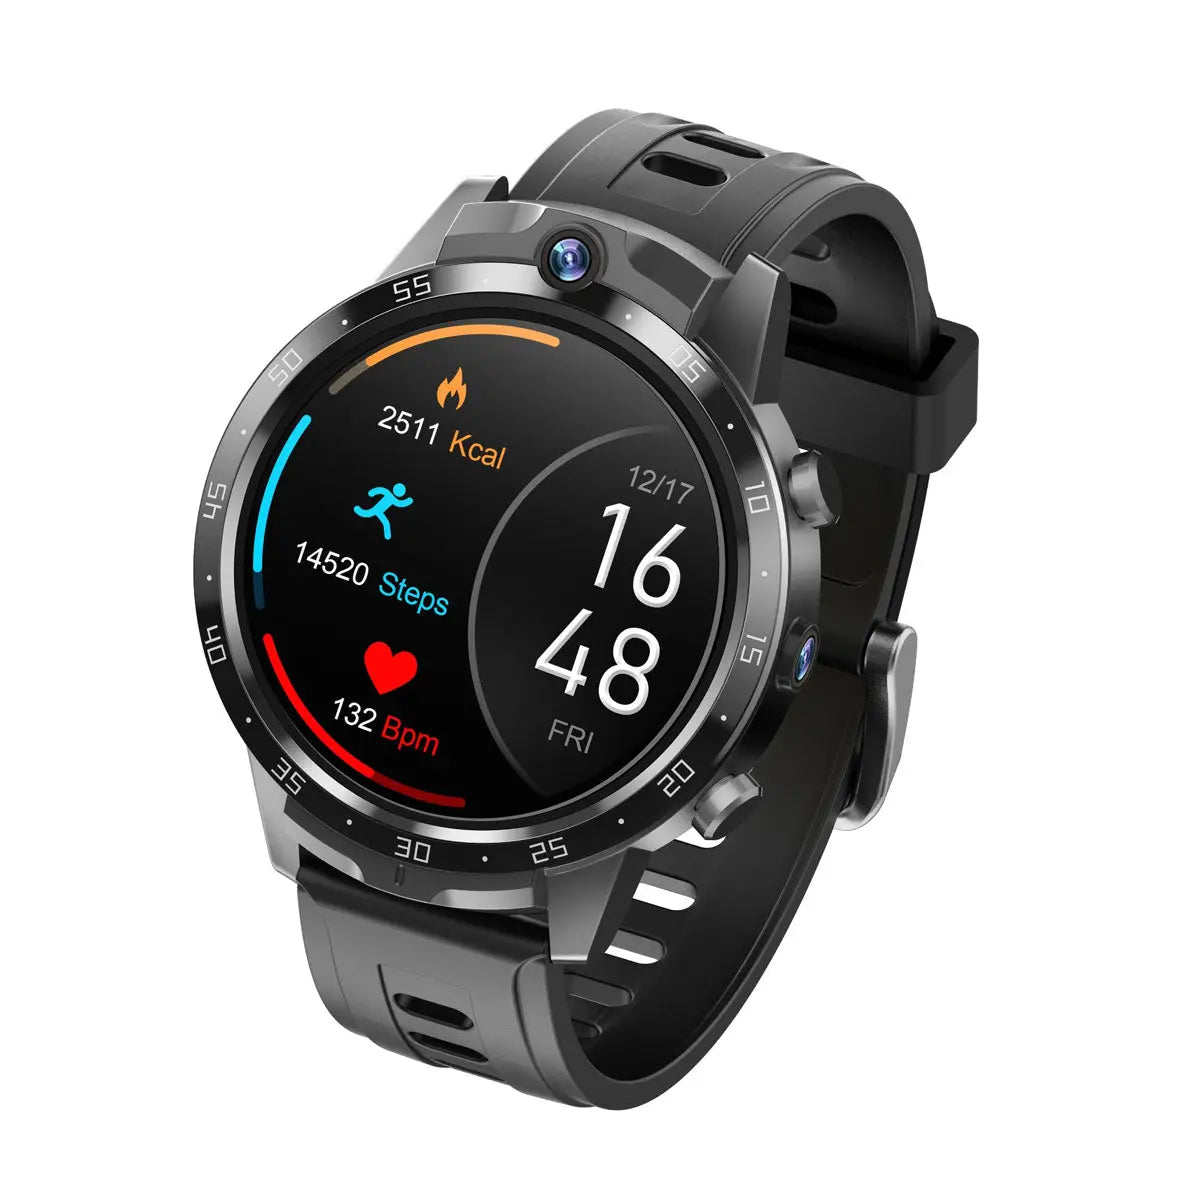 Smartwatch Reloj Android X600S Fralugio 2 Cámaras Wifi 4G NFC